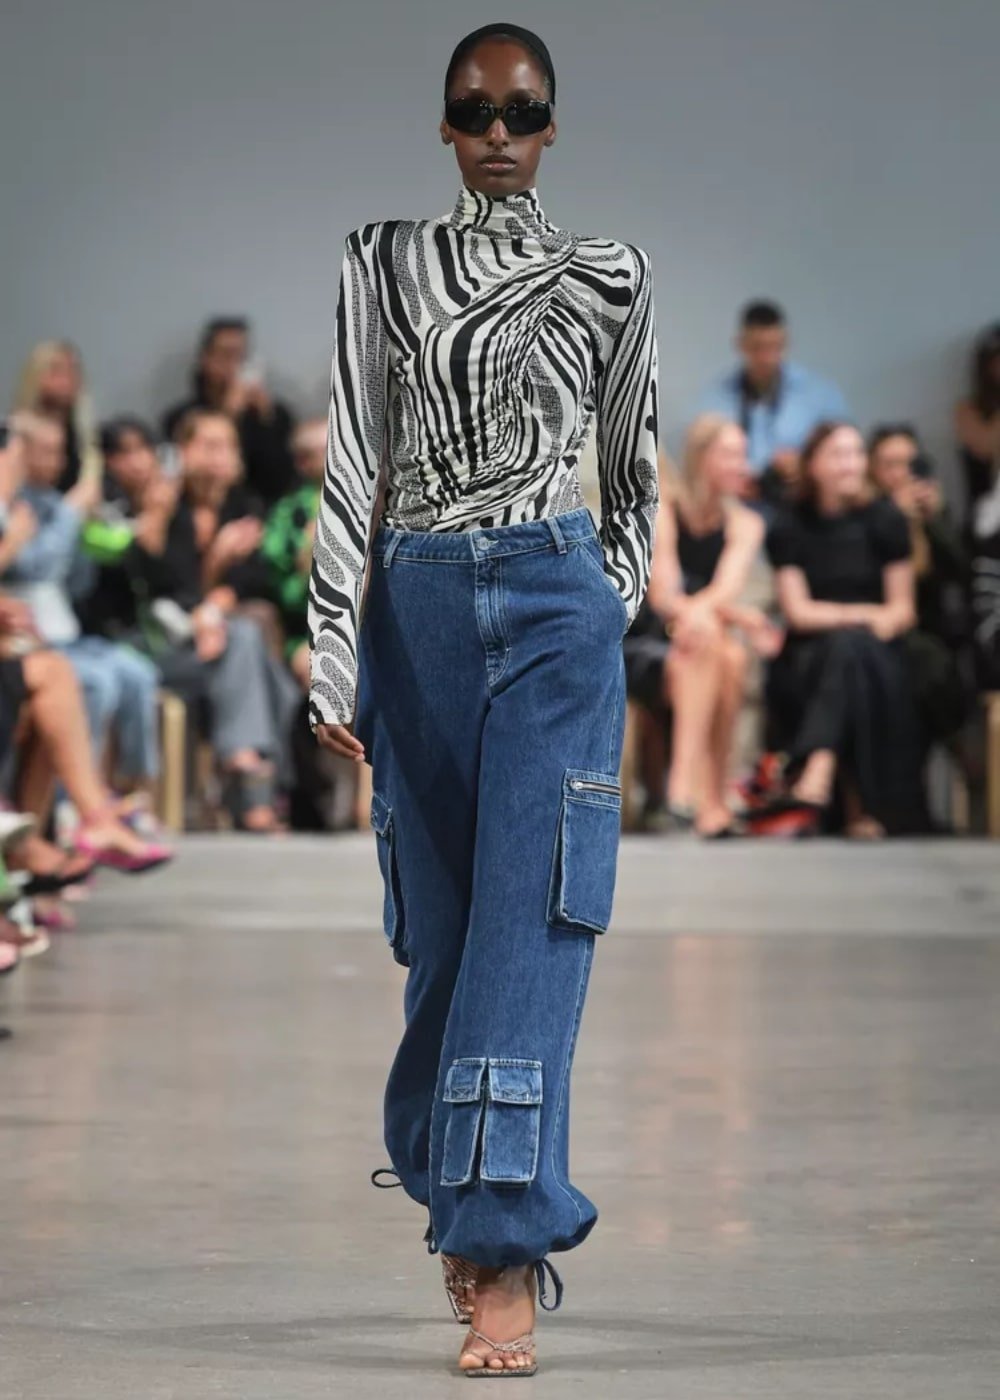 Gestuz - calça cargo, blusa animal print e sandália - tendências de moda - Primavera - modelo andando pela passarela - https://stealthelook.com.br